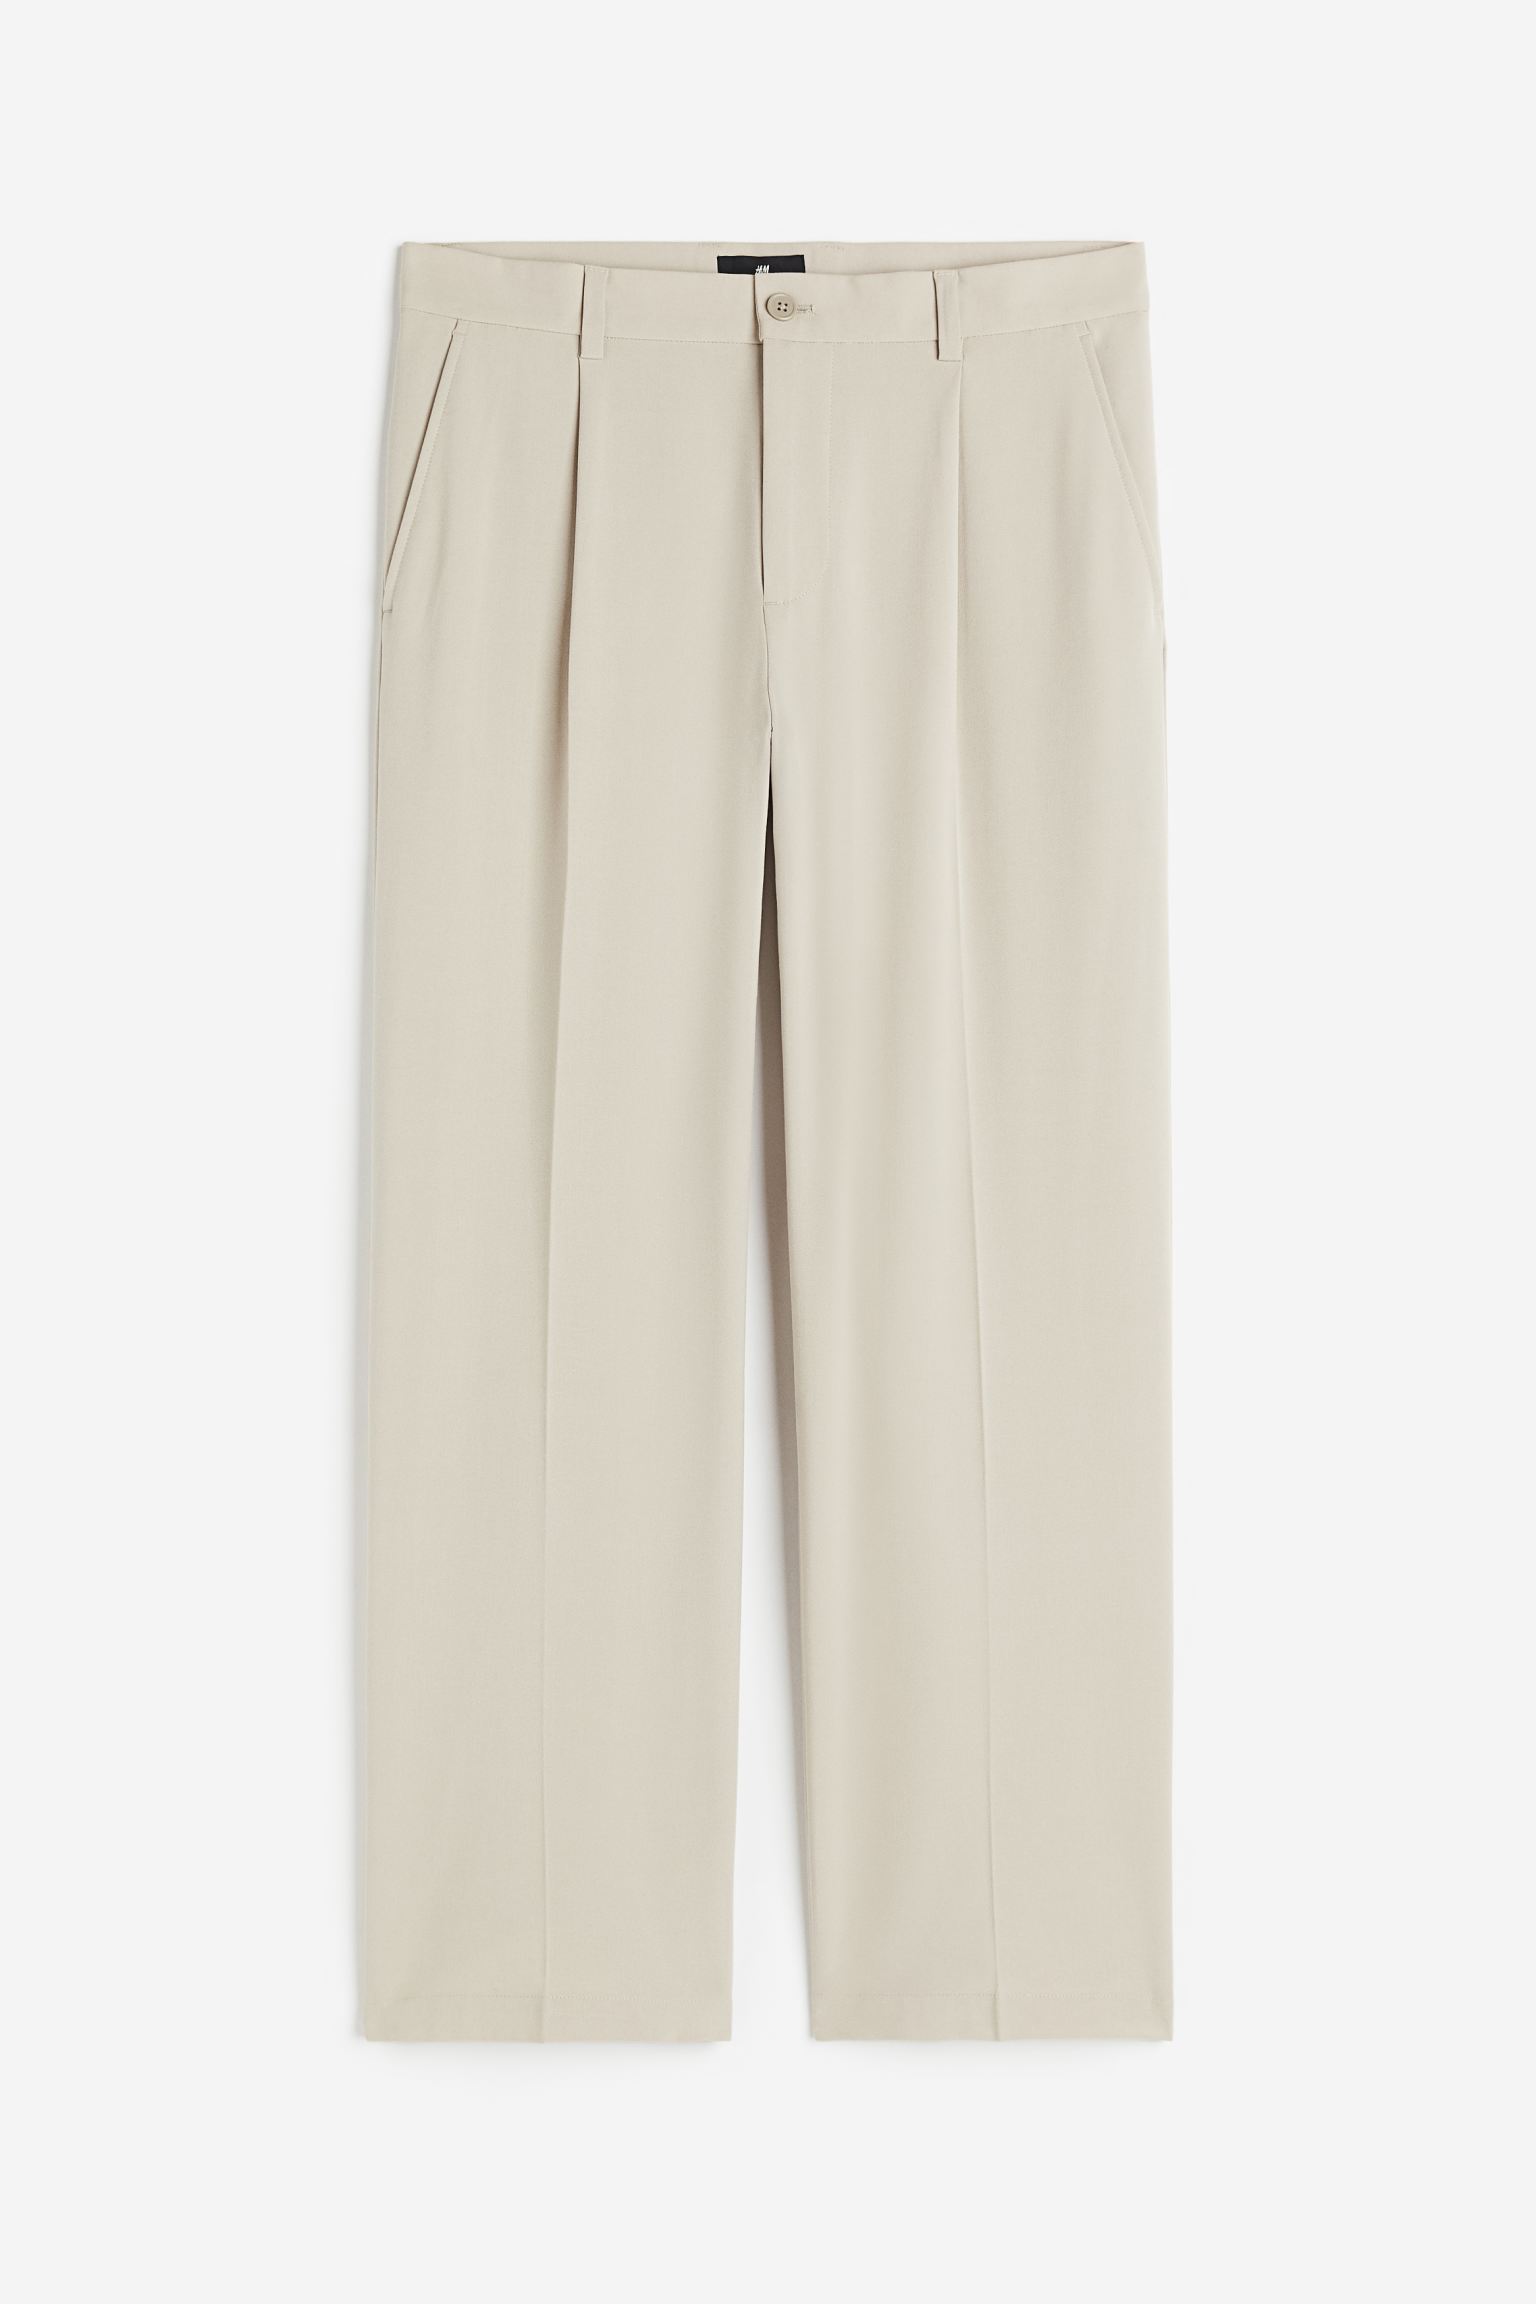 Брюки H&M Loose Fit Dress, светло-бежевый брюки свободного кроя со складками